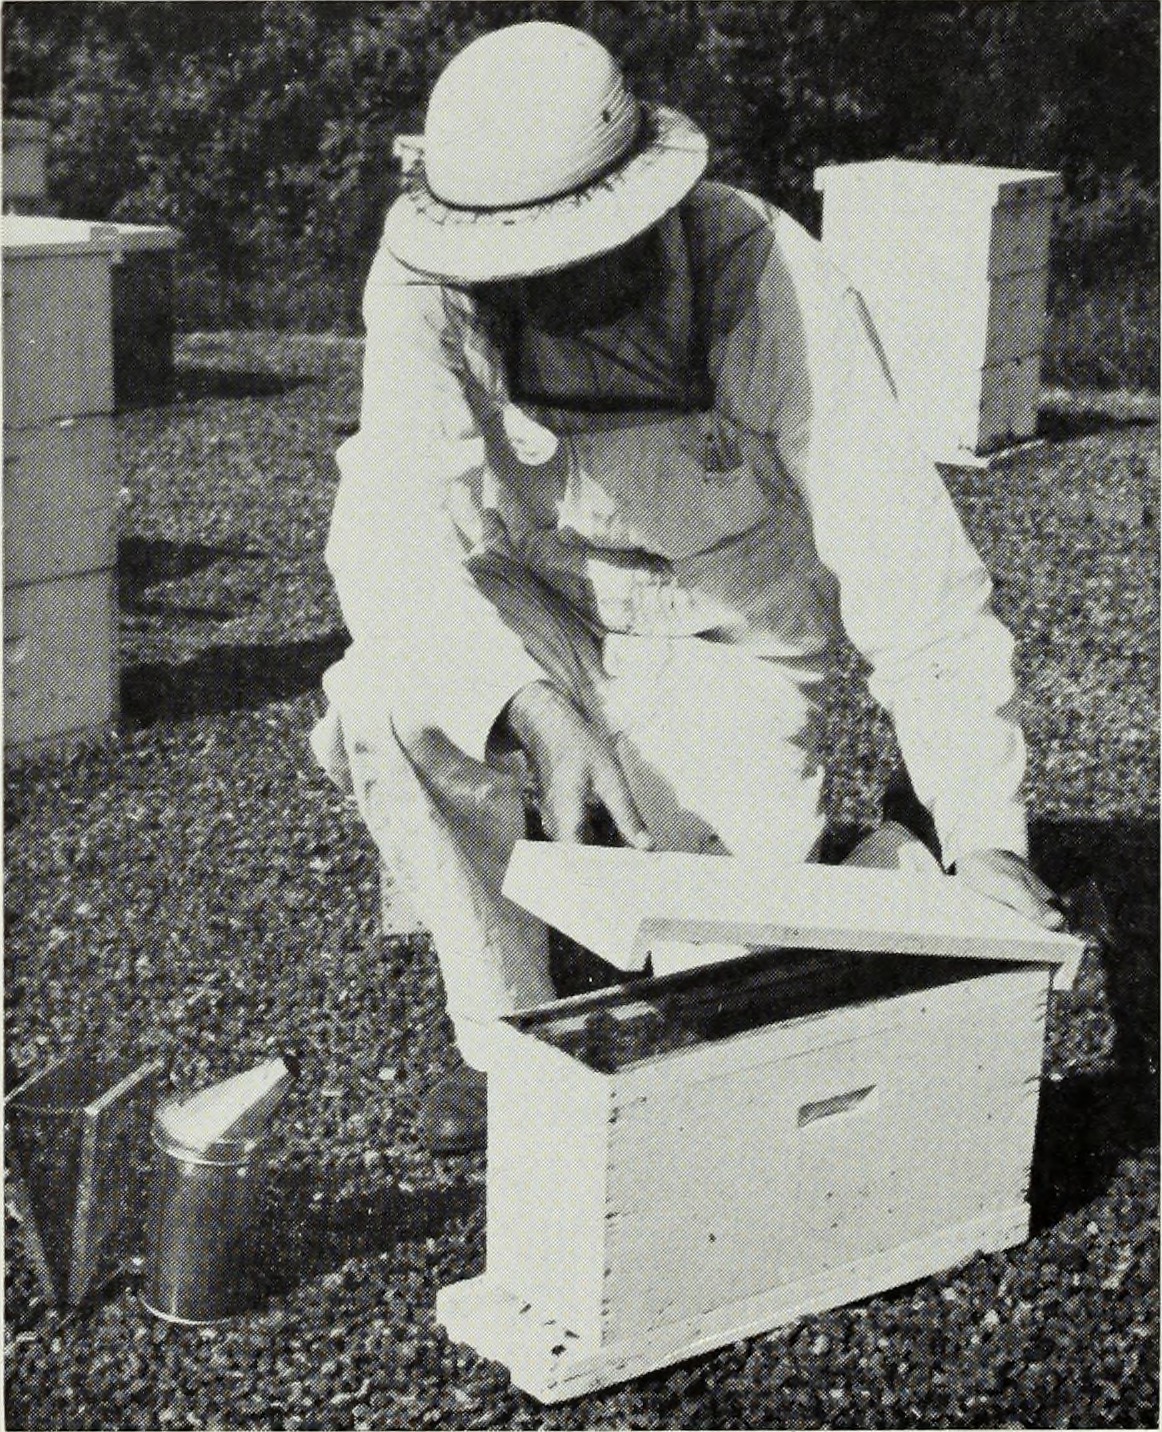 JAYCOX (1969) - Beekeeping in Illinois